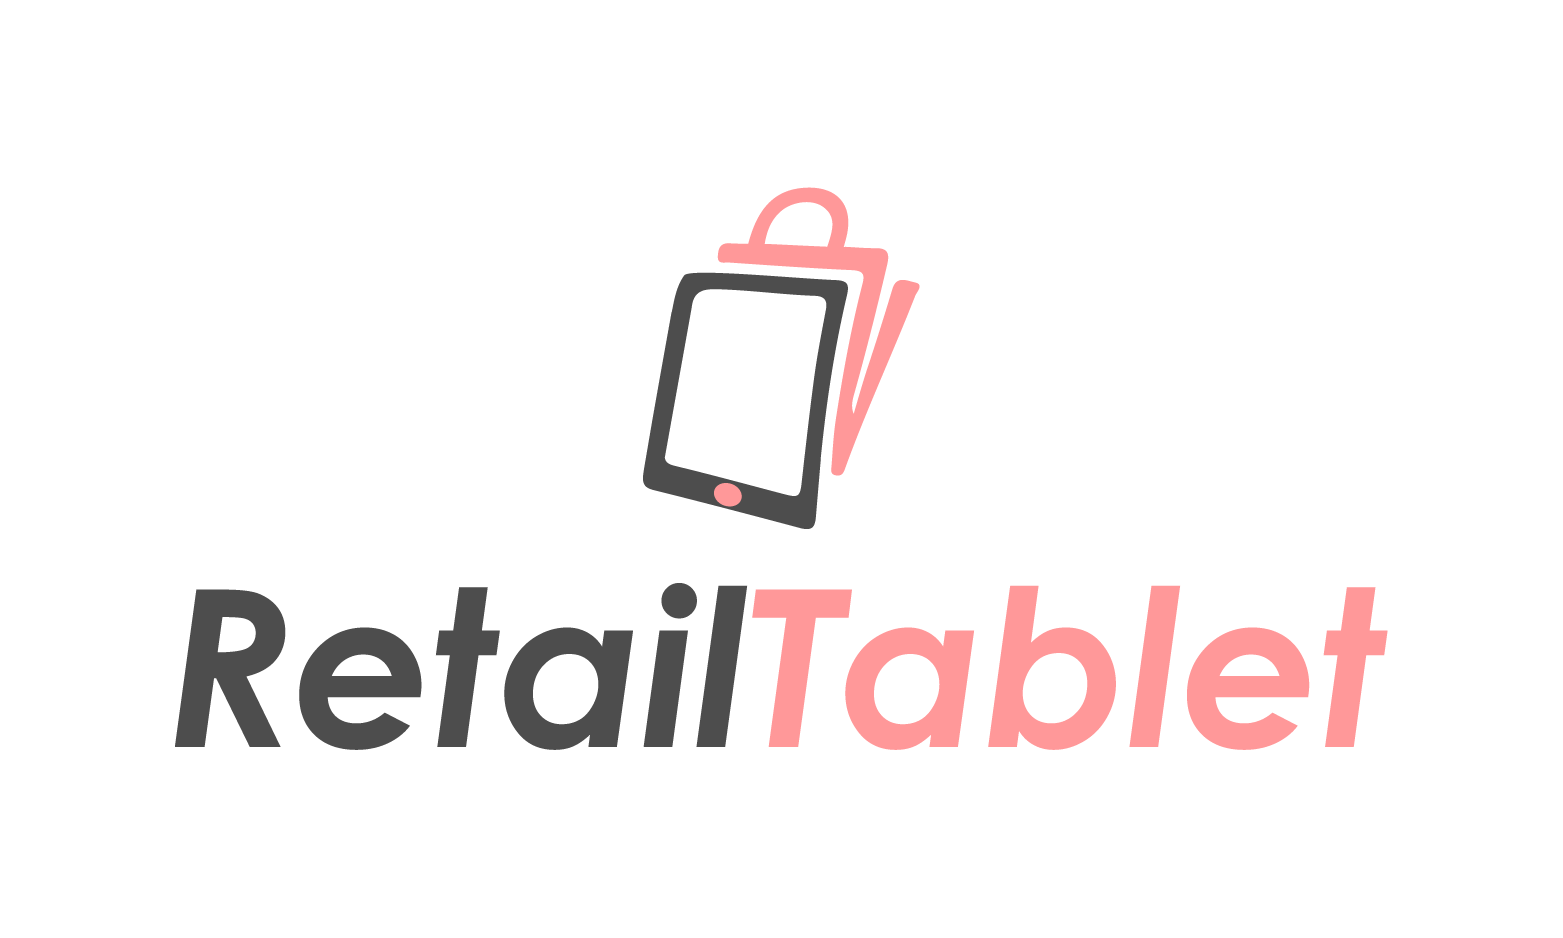 RetailTablet.com - Creative brandable domain for sale